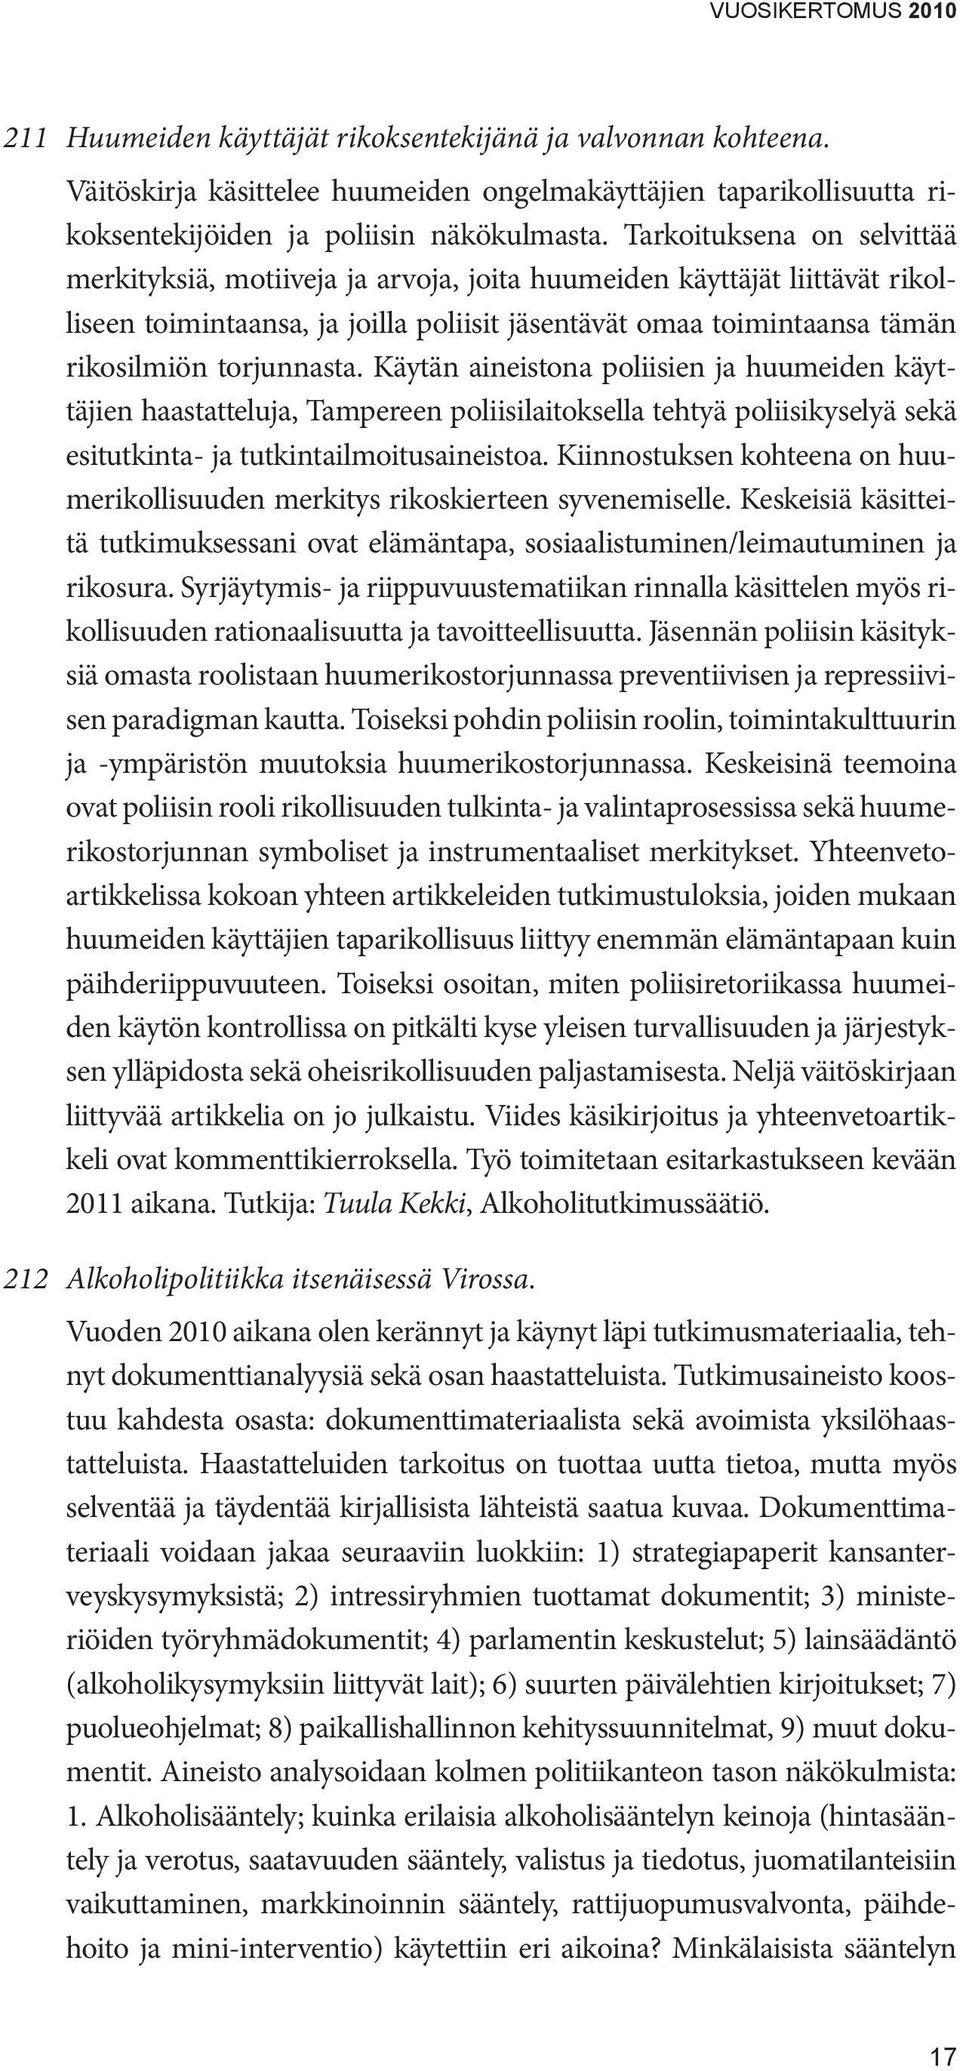 torjunnasta. Käytän aineistona poliisien ja huumeiden käyttäjien haastatteluja, Tampereen poliisilaitoksella tehtyä poliisikyselyä sekä esitutkinta- ja tutkintailmoitusaineistoa.